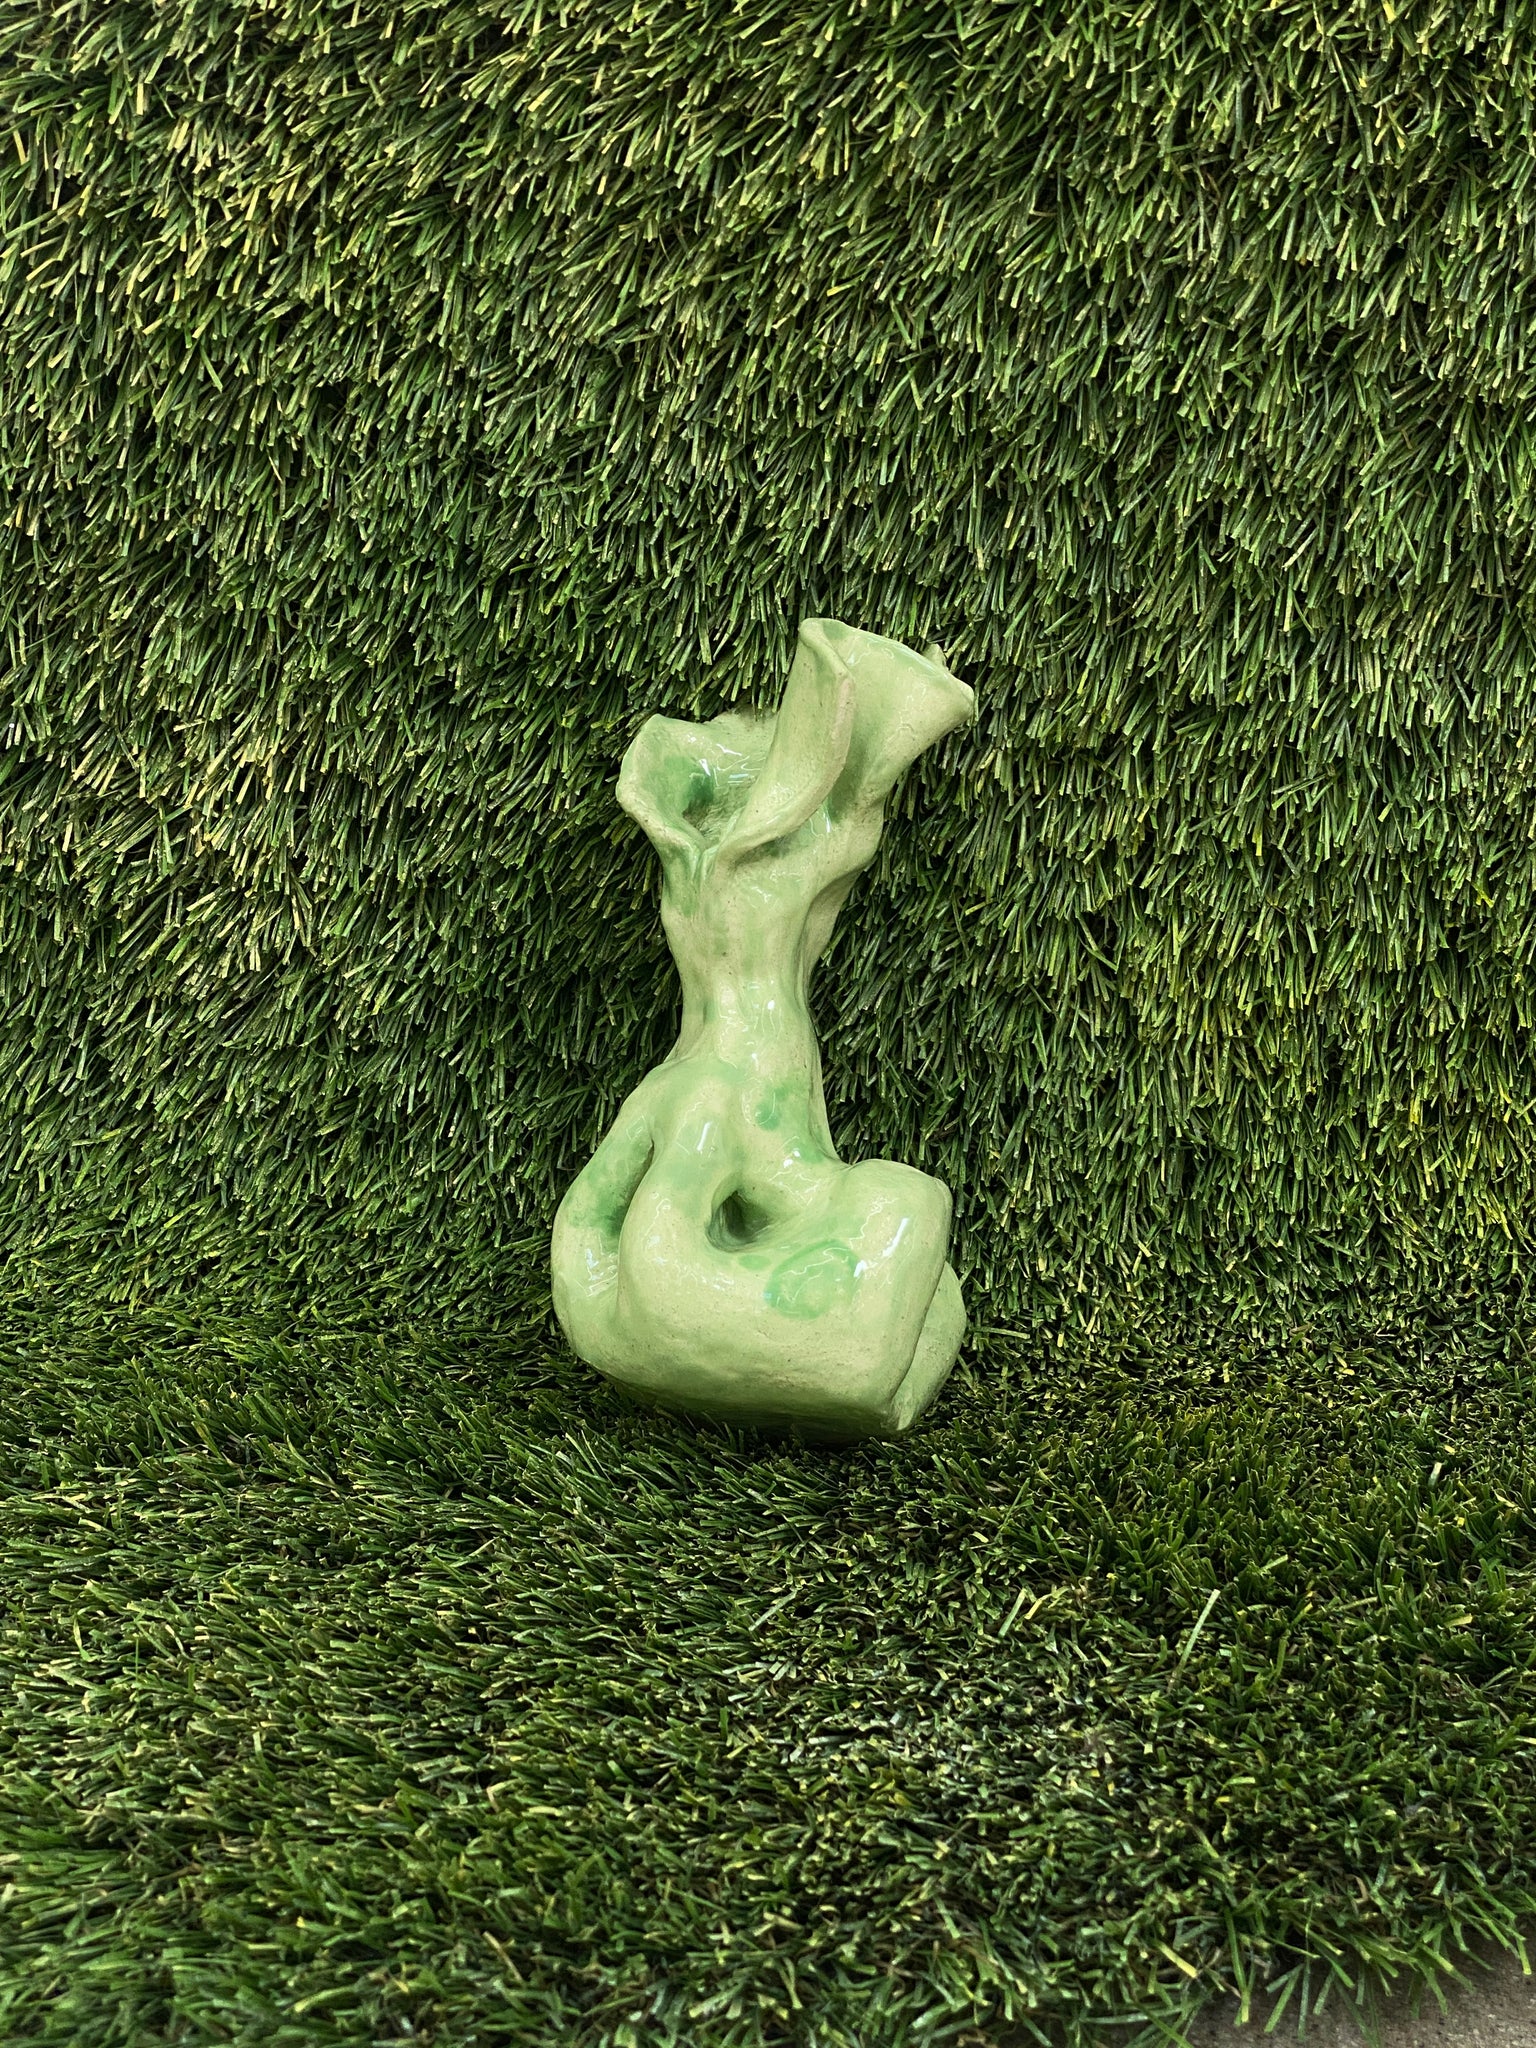 Ceramic sculpture of dog poop bag in light green